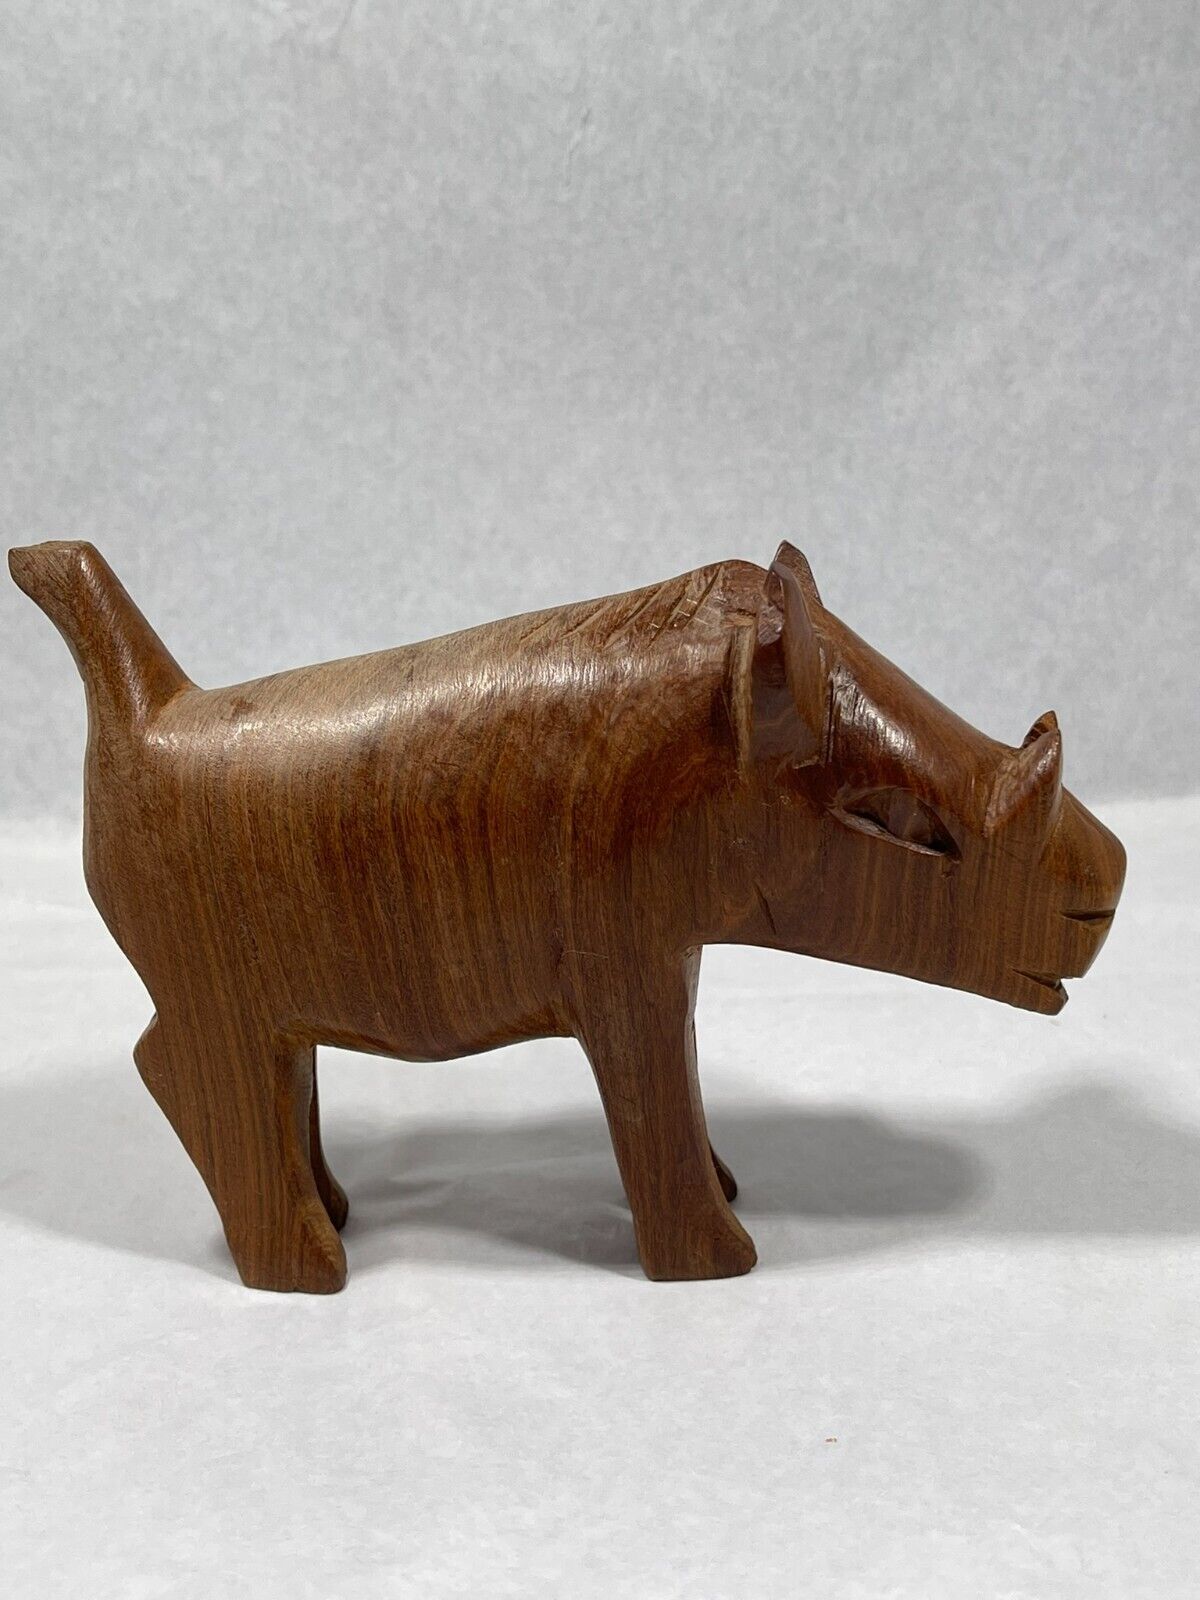 Vintage Pair of Hand Carved Made In Kenya Warthog Wild Boar Pigs Teak Wood